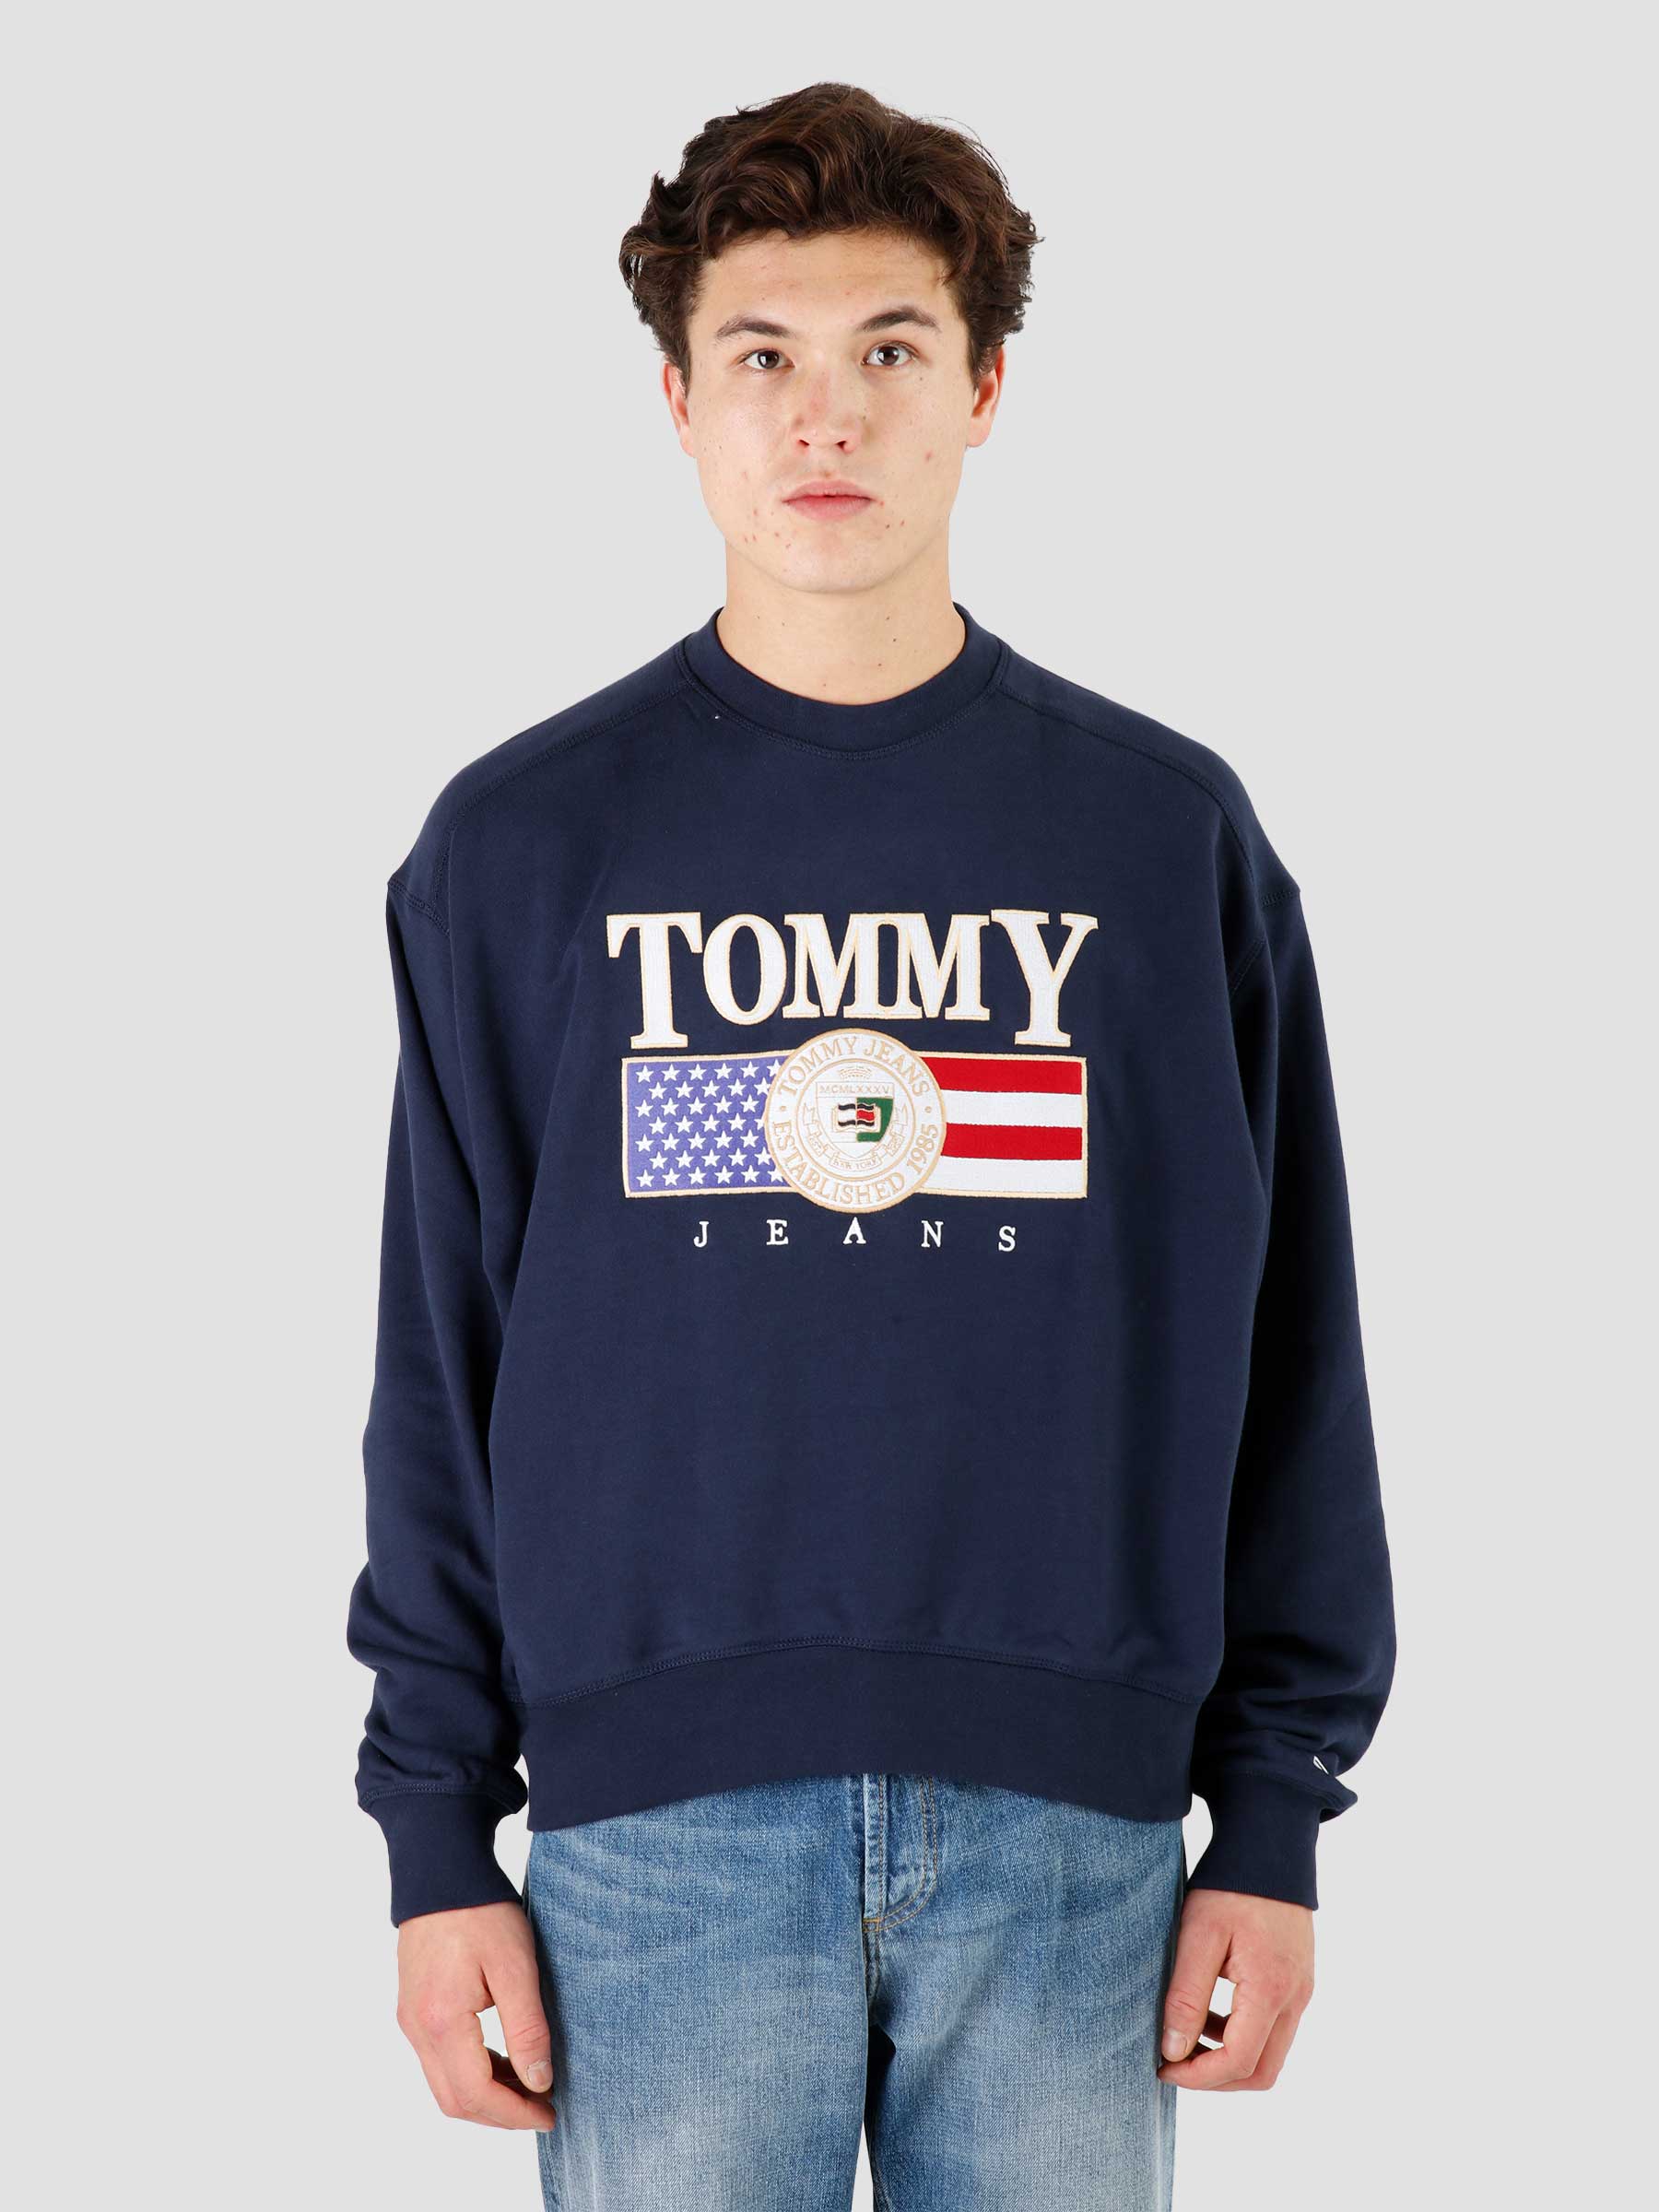 Tommy Jeans Navy Luxe Twilight TJ Crewneck - Freshcotton TJM Boxy